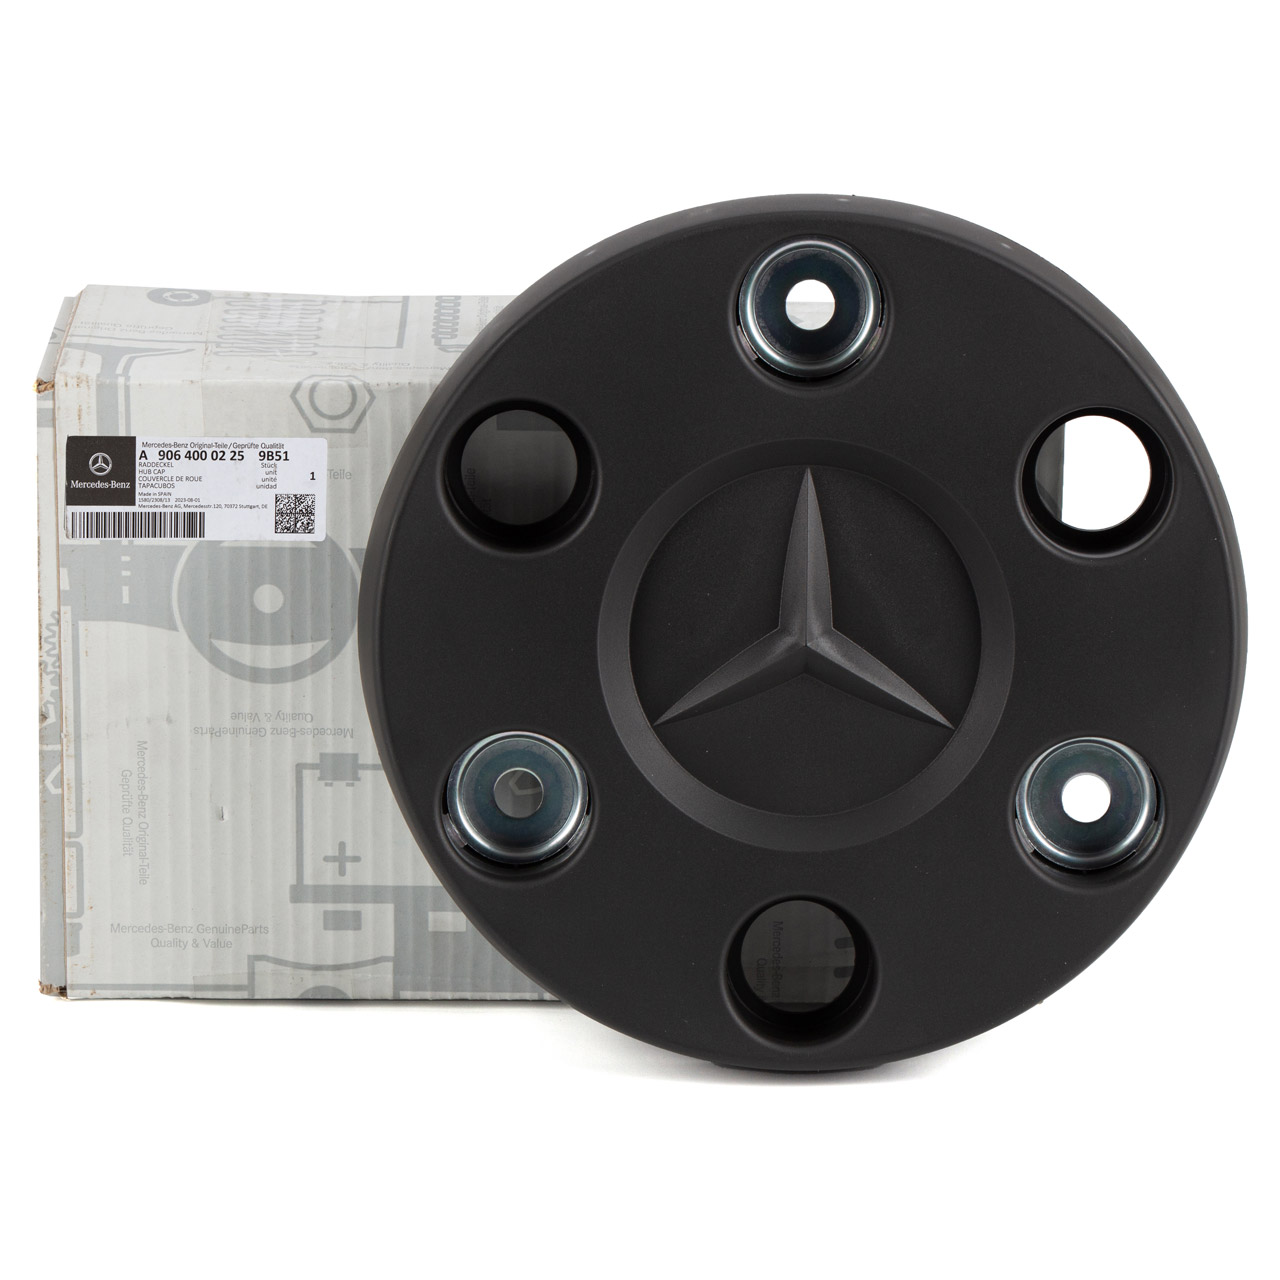 1x ORIGINAL Mercedes Radkappe Radblende 16 Zoll Sprinter 5t B906 B907 90640002259B51